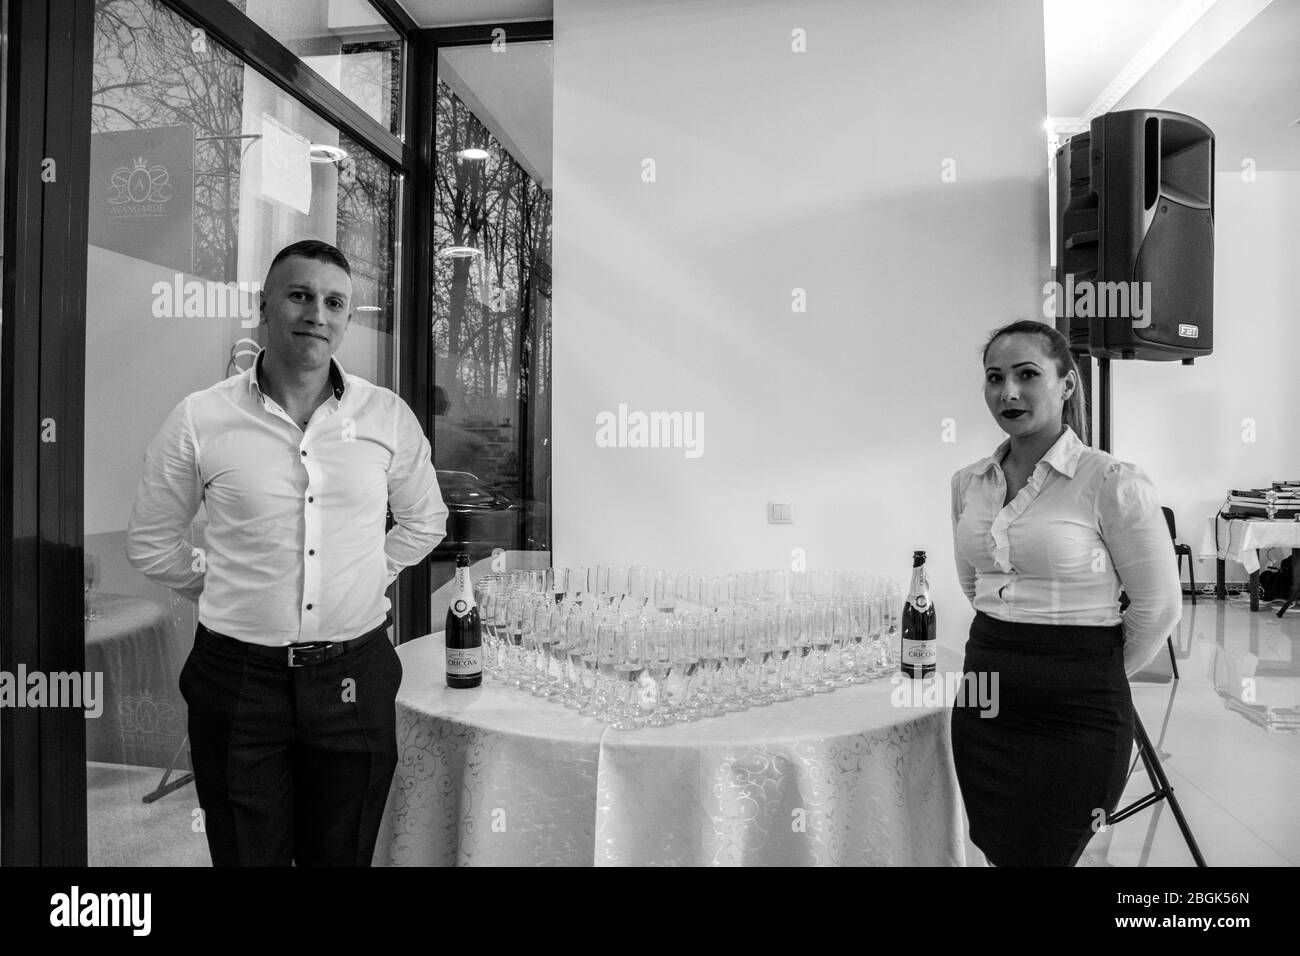 Bals / Roumanie / 27 décembre 2018 : des verres de champagne sur la table à l'entrée de la salle de mariage Banque D'Images